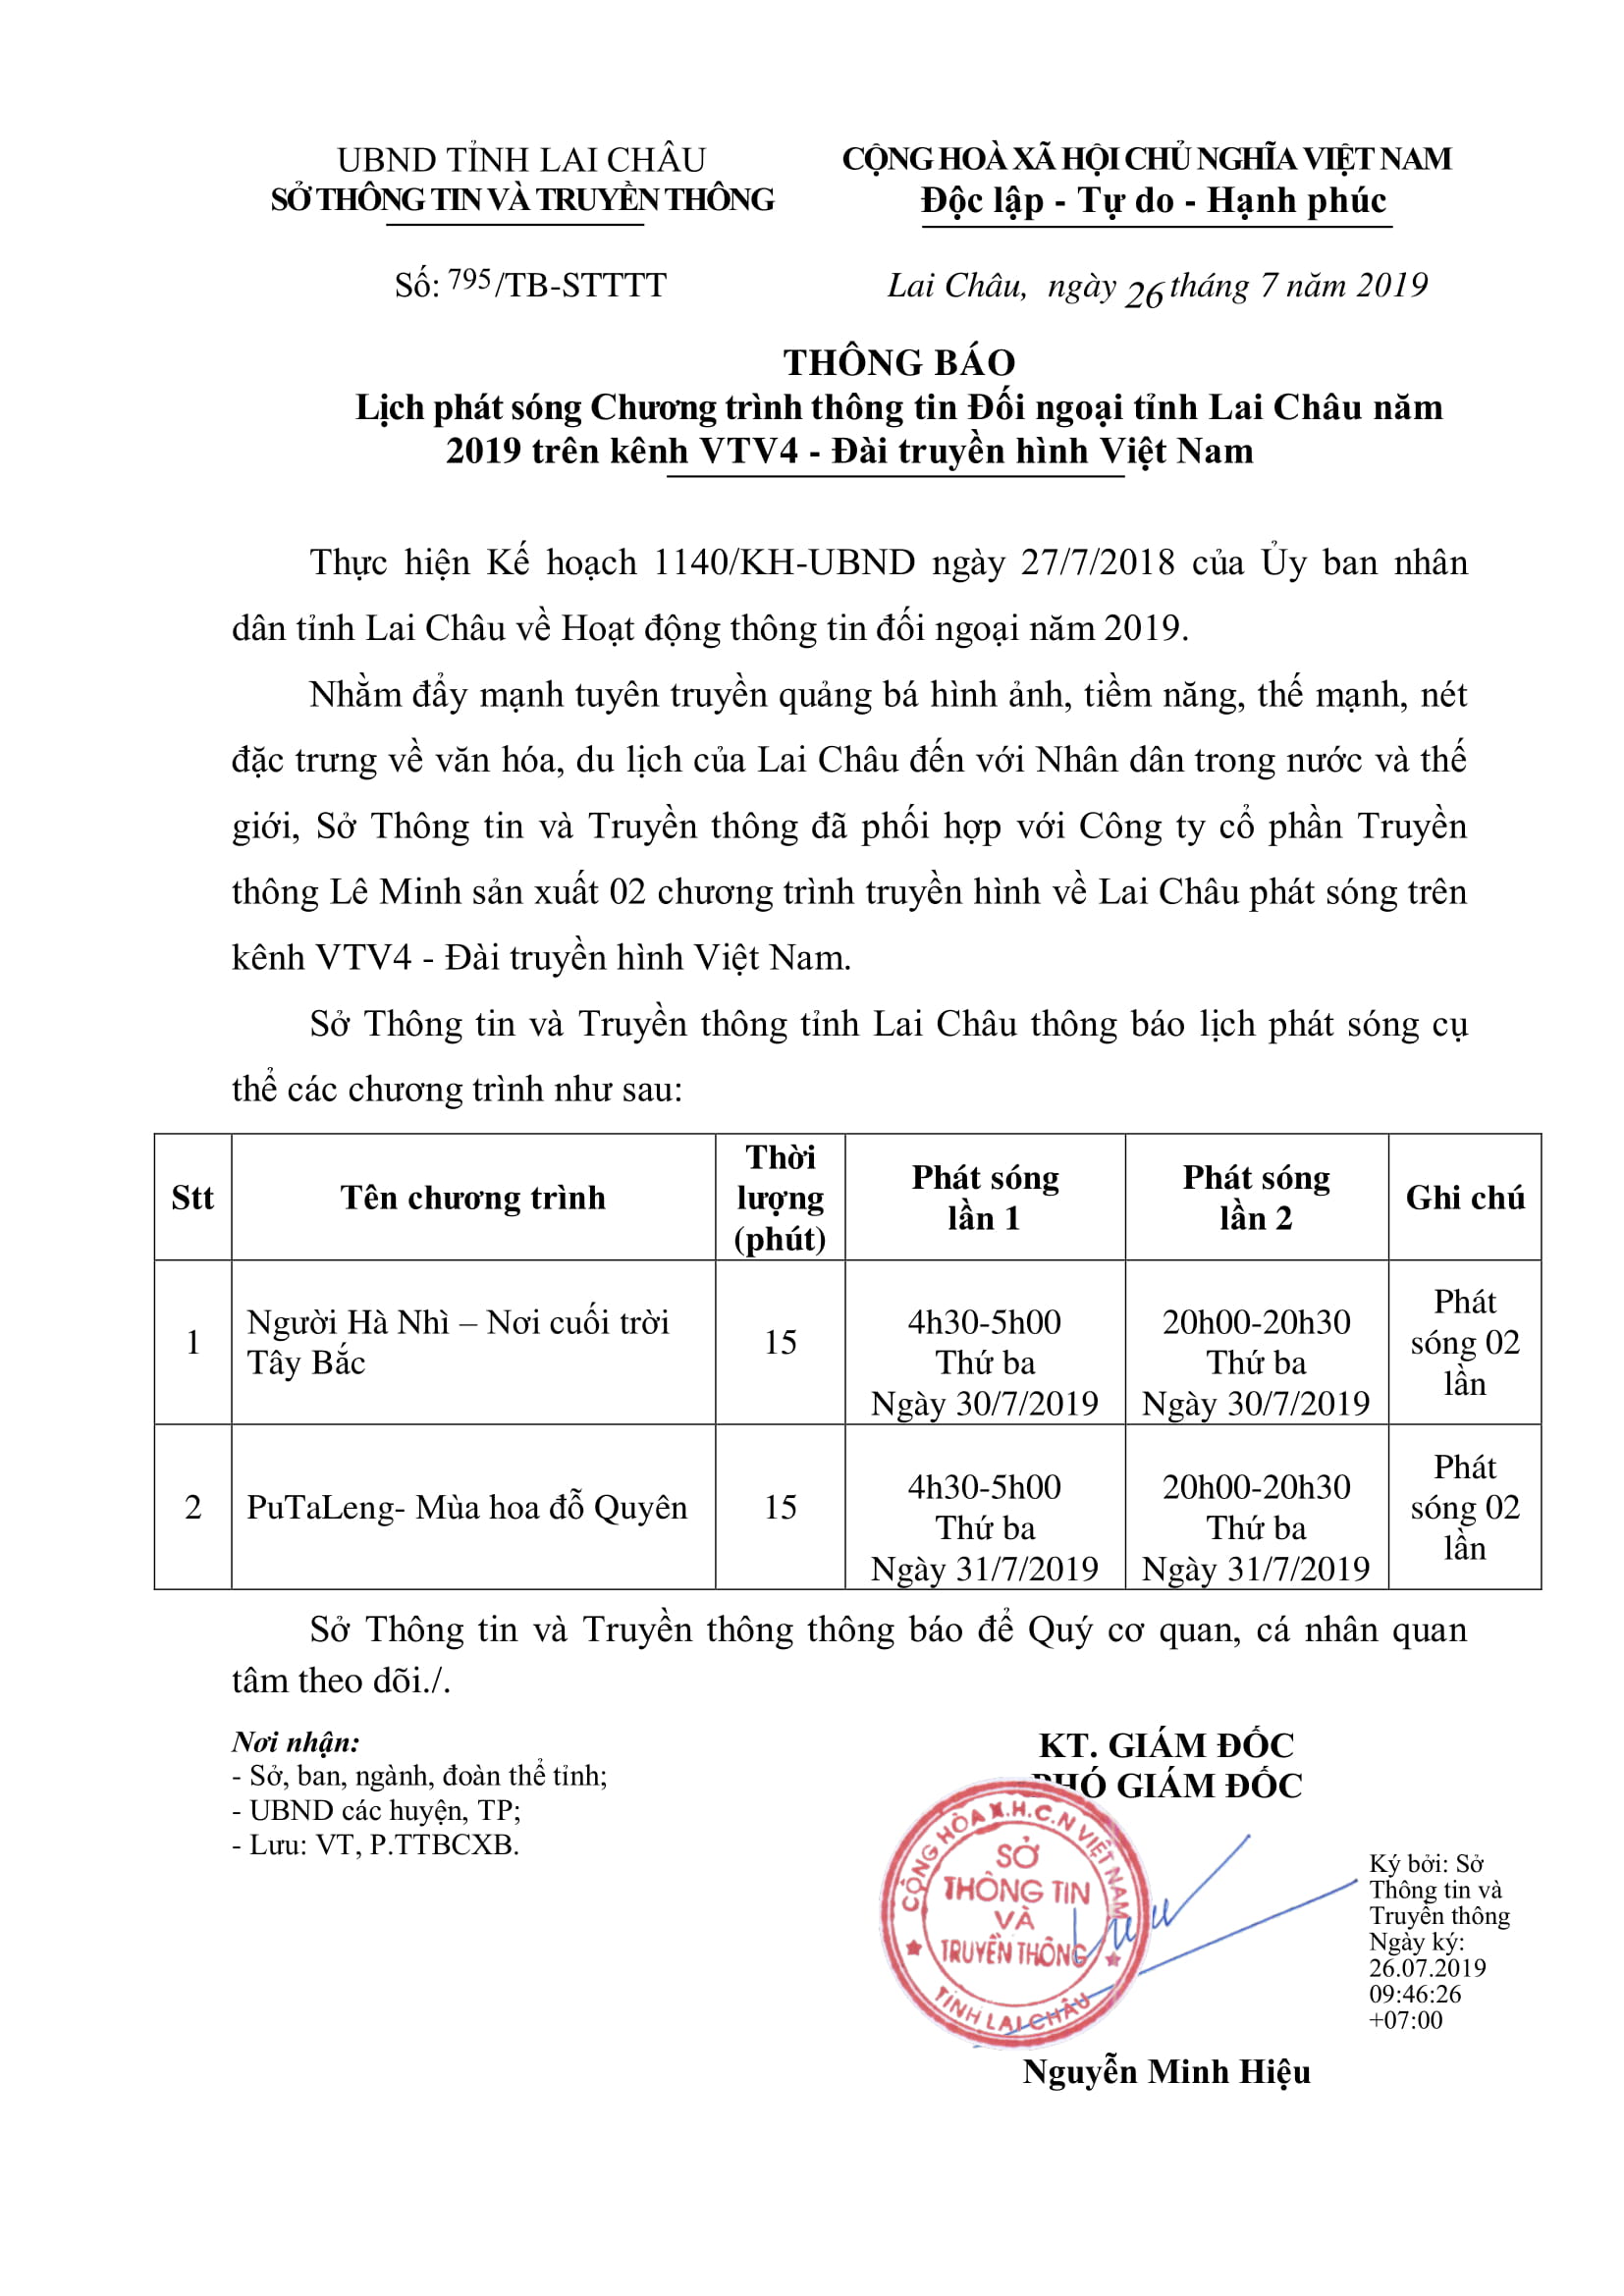 Thông báo lịch phát sóng Chương trình thông tin đối ngoại tỉnh Lai Châu năm 2019